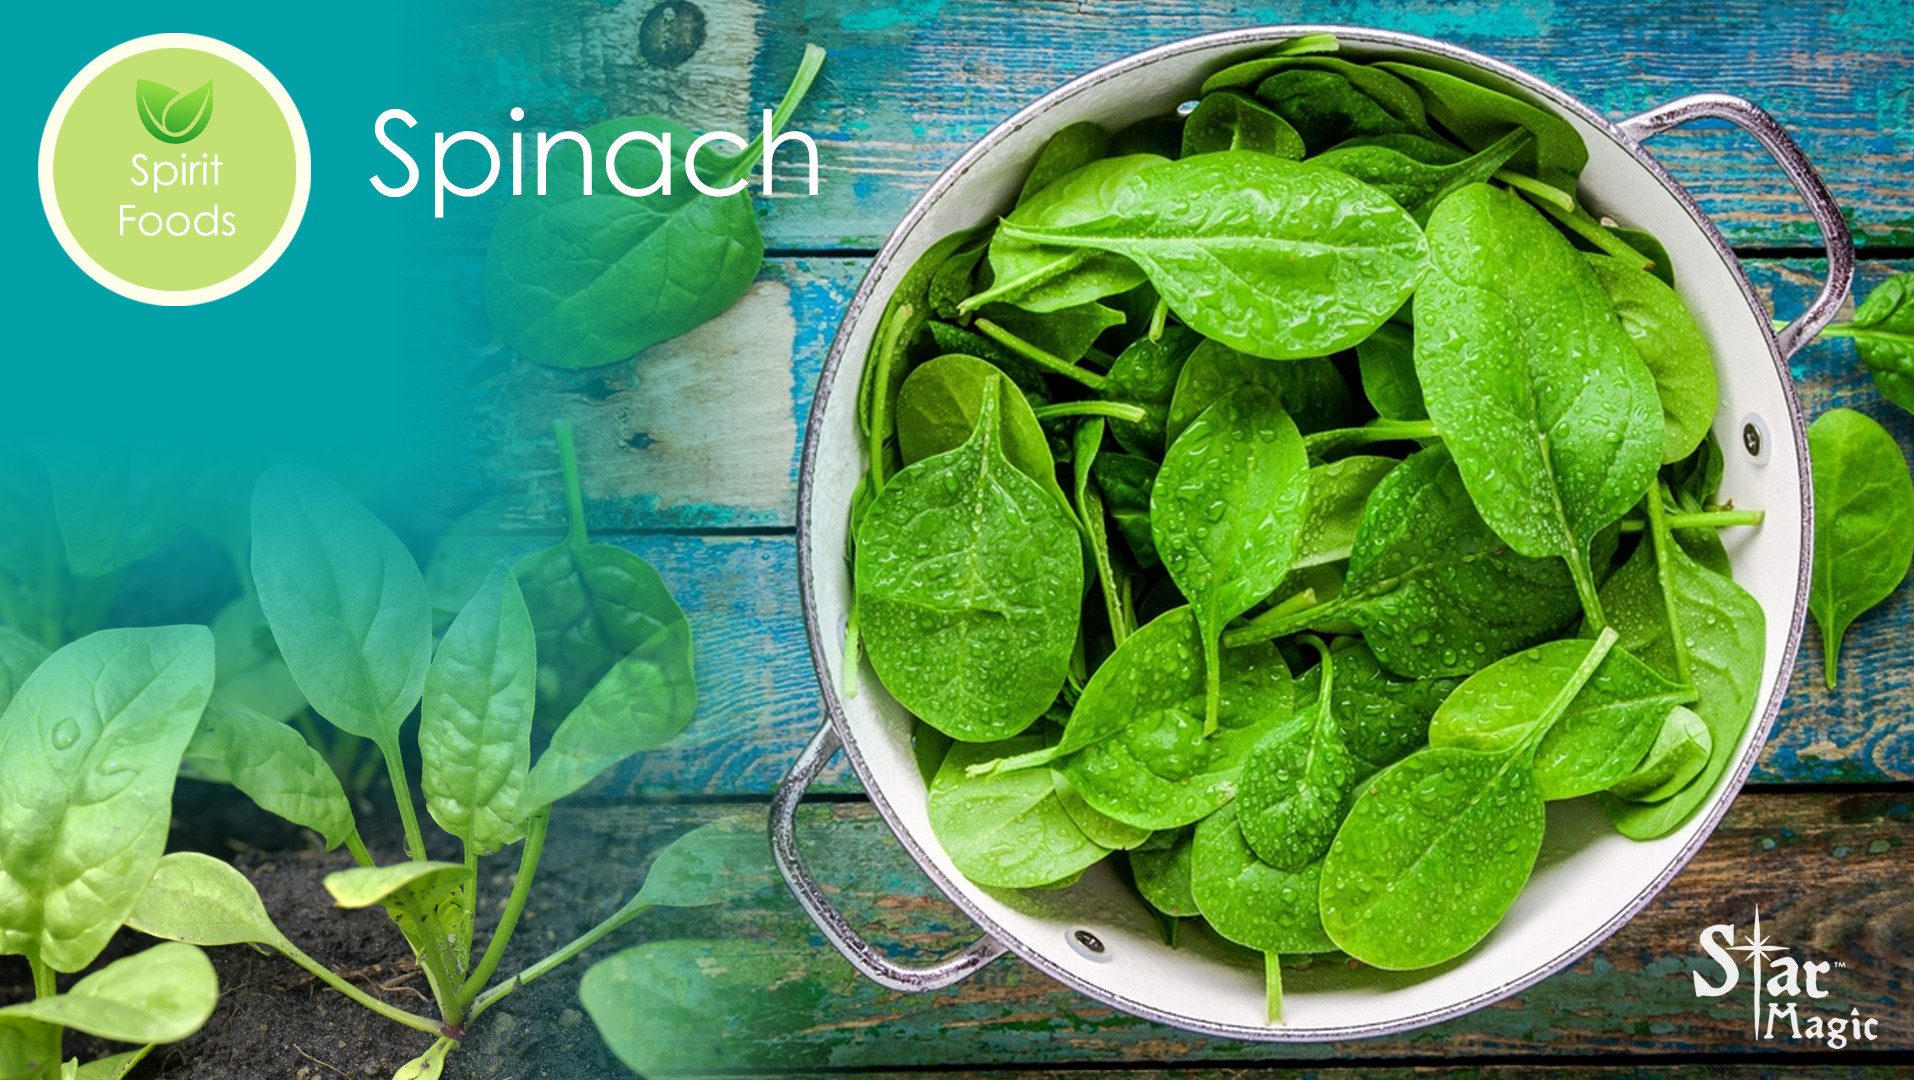 Spirit Food Spinach